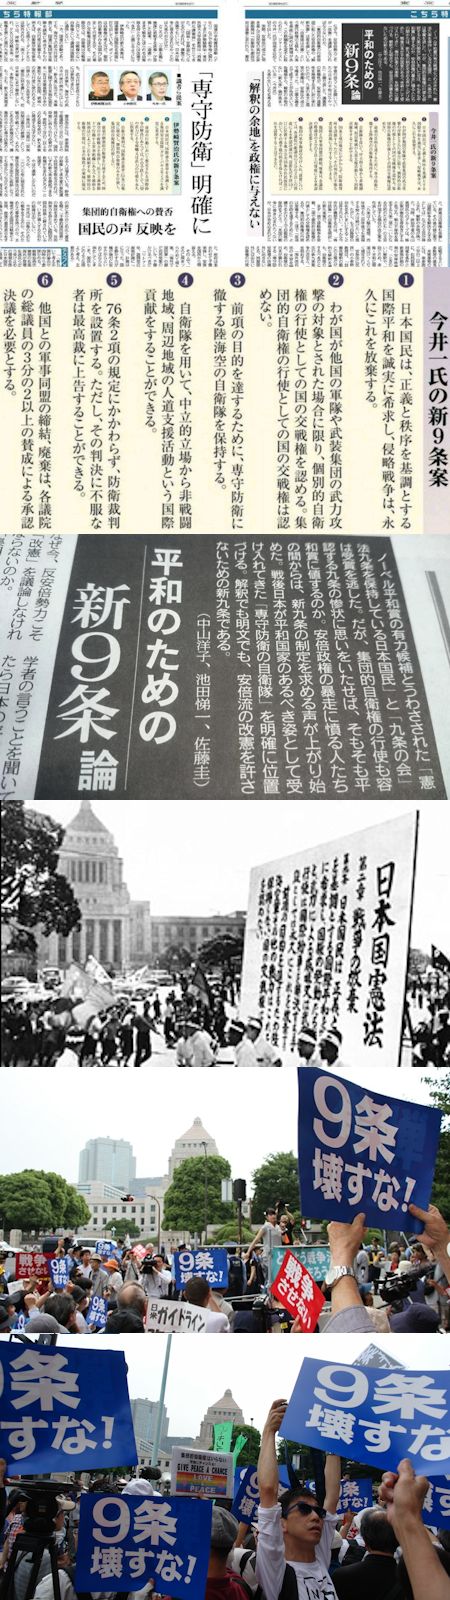 東京新聞が仕掛けた左からの改憲策動 - 「新9条」の正体は「普通の国」_c0315619_1519924.jpg